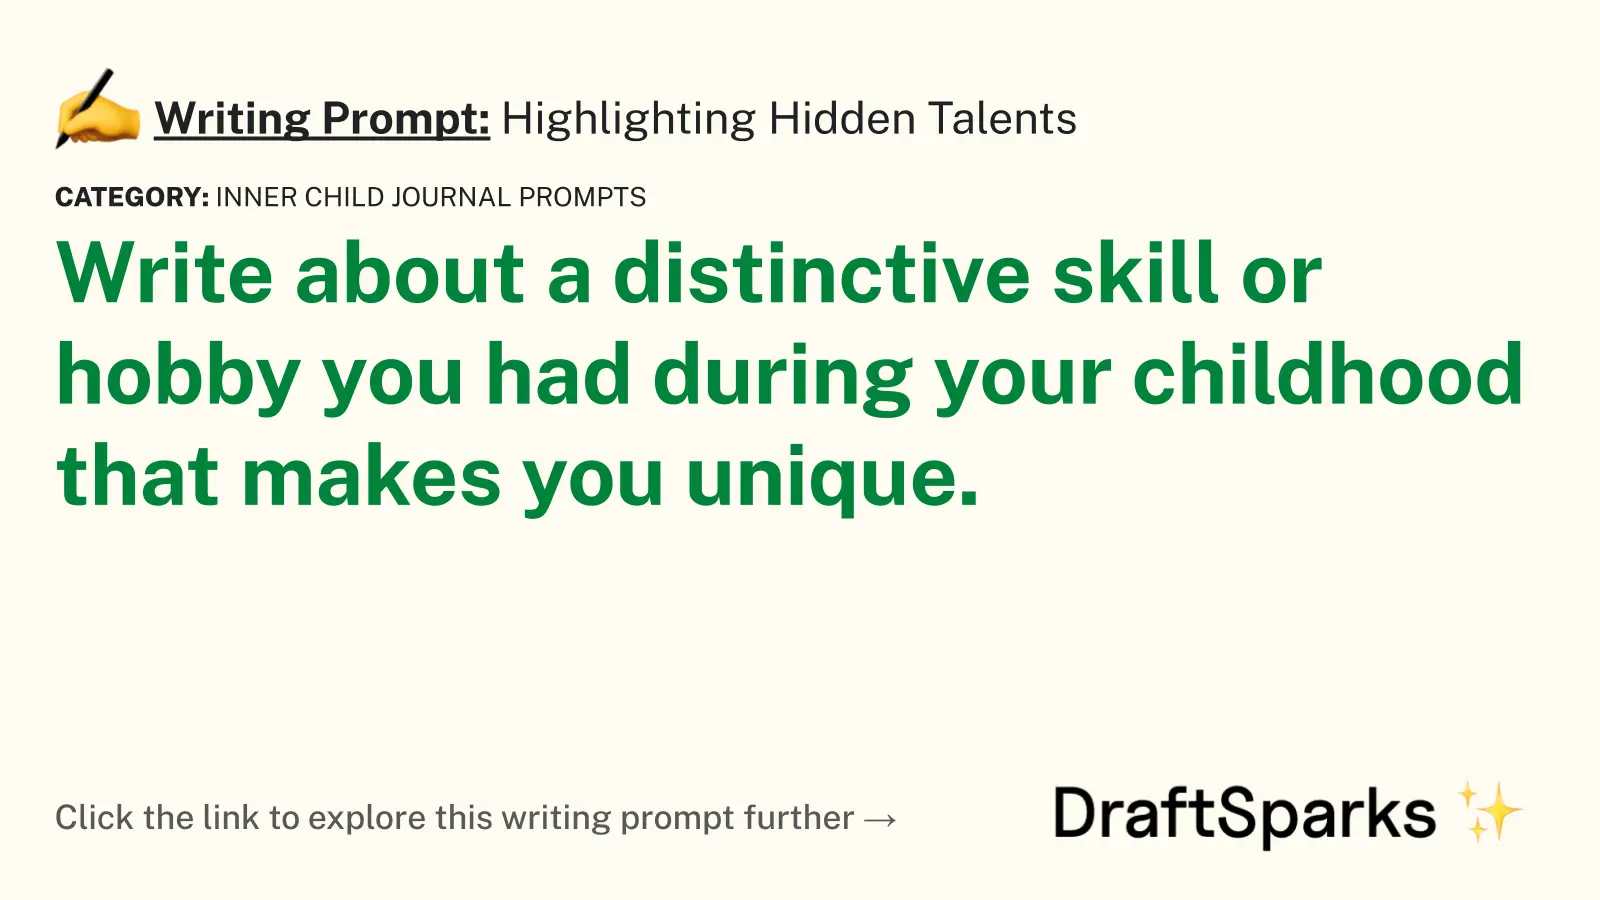 Highlighting Hidden Talents